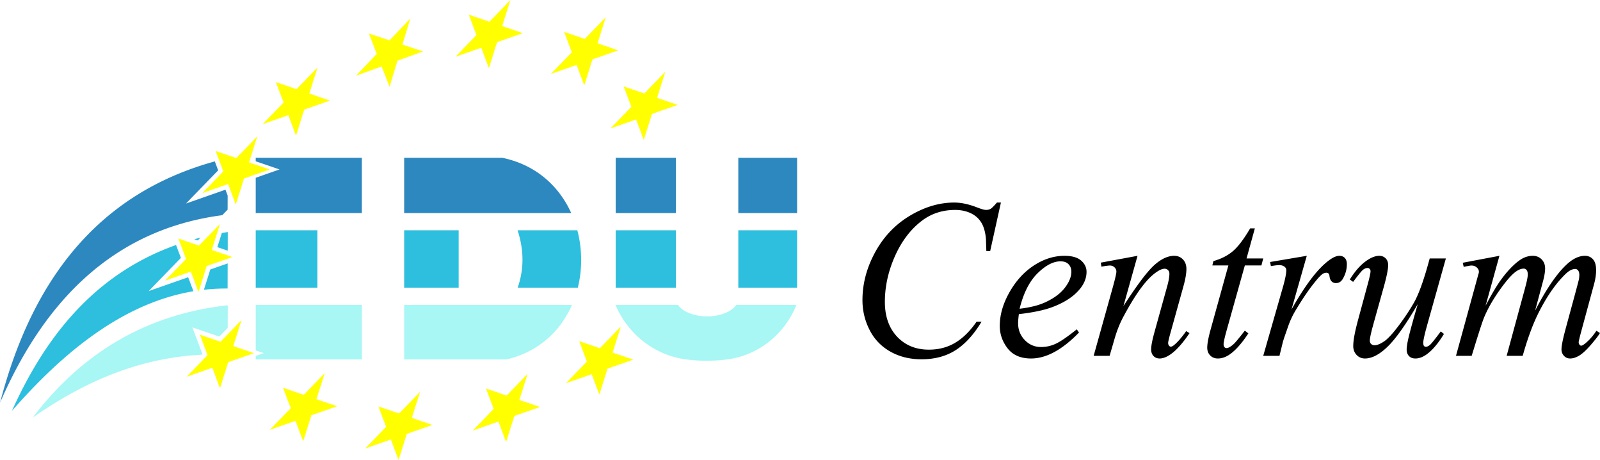 logo educentrum